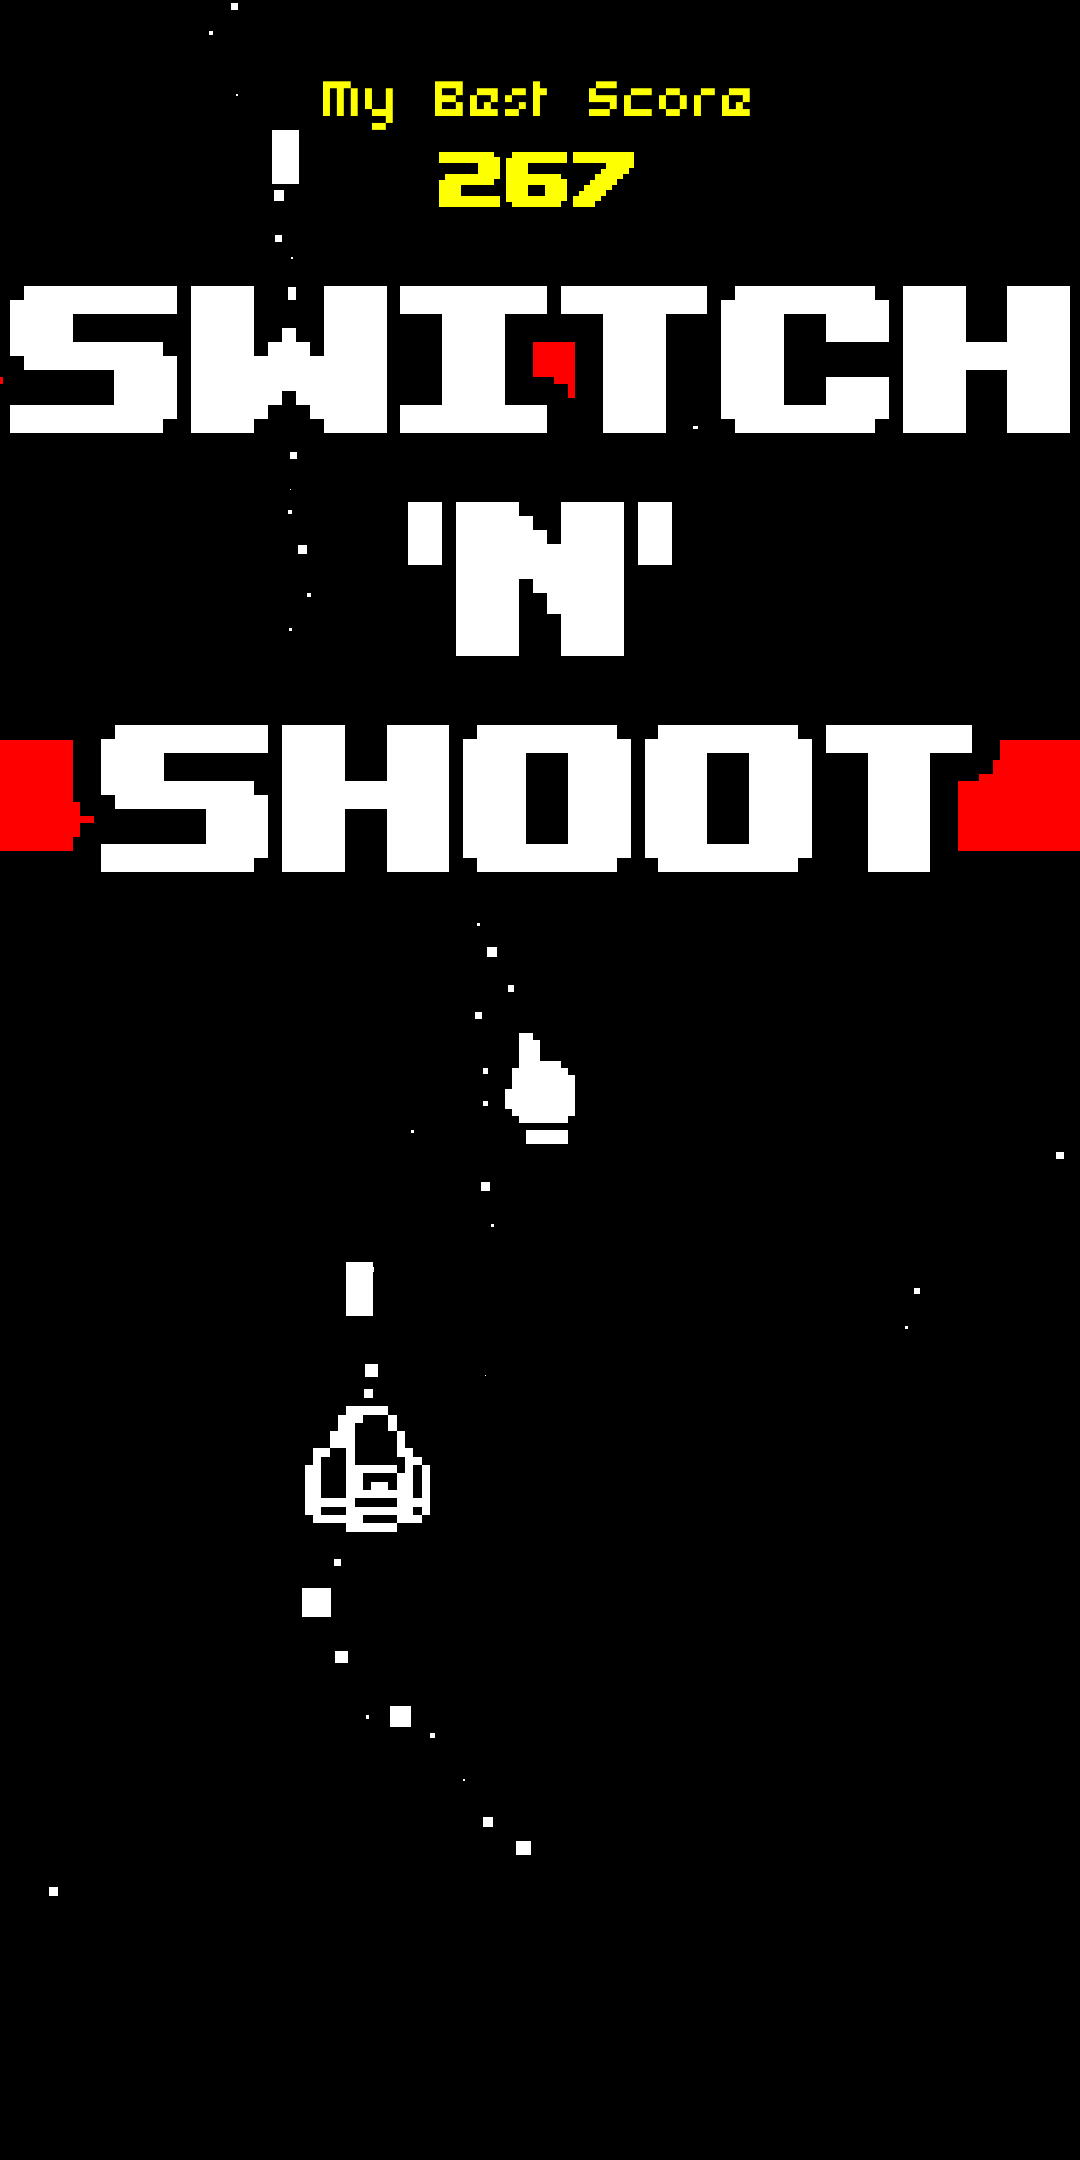 Screenshot: Switch’N’Shoot main screen, showing 267 as my top score